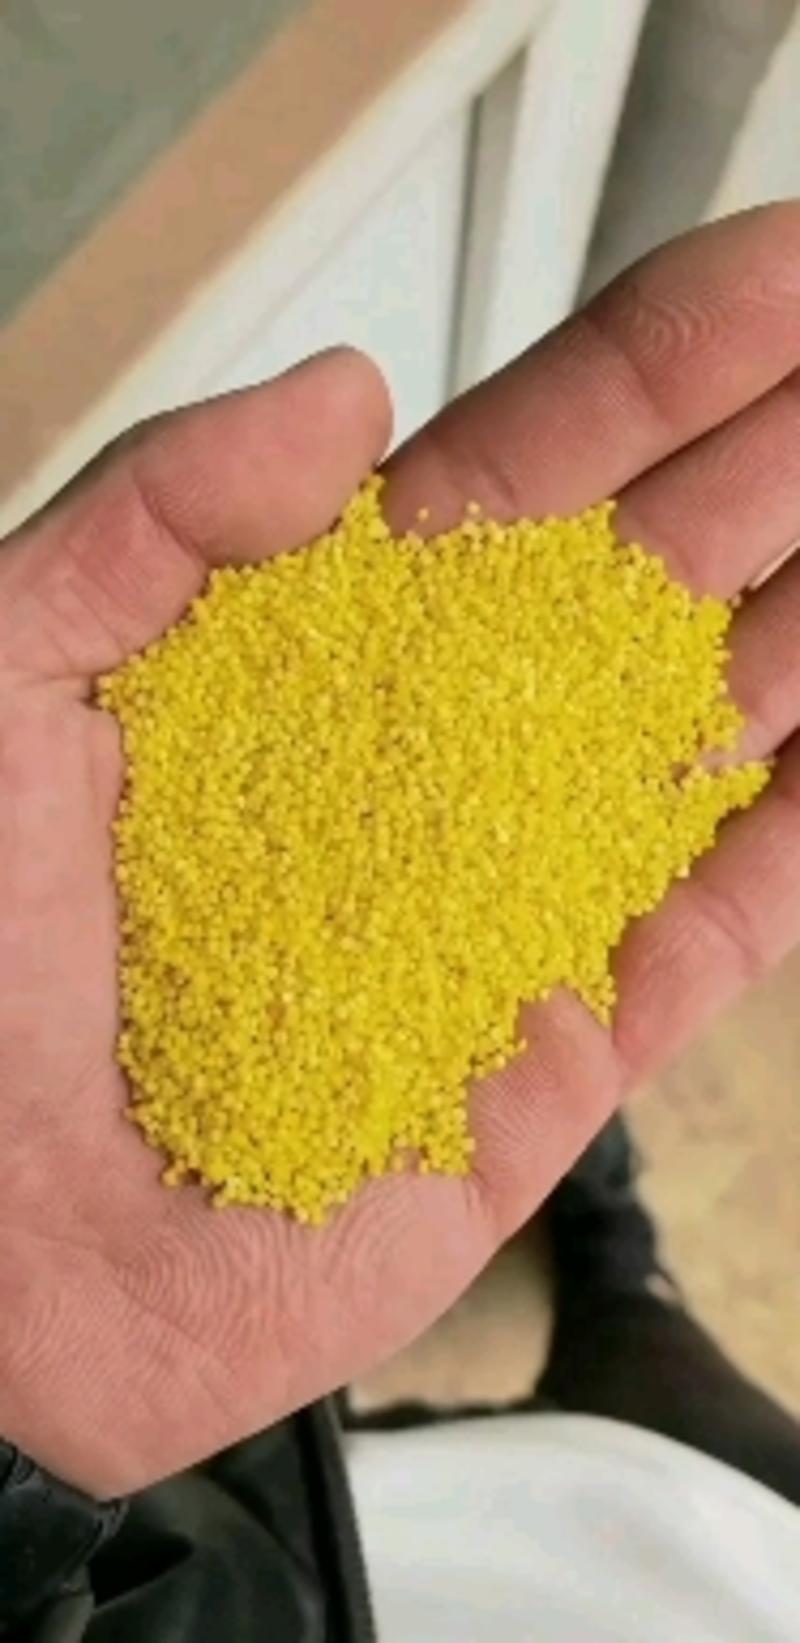 厂家直销黄小米，质量很好，品种齐全，欢迎经销商咨询